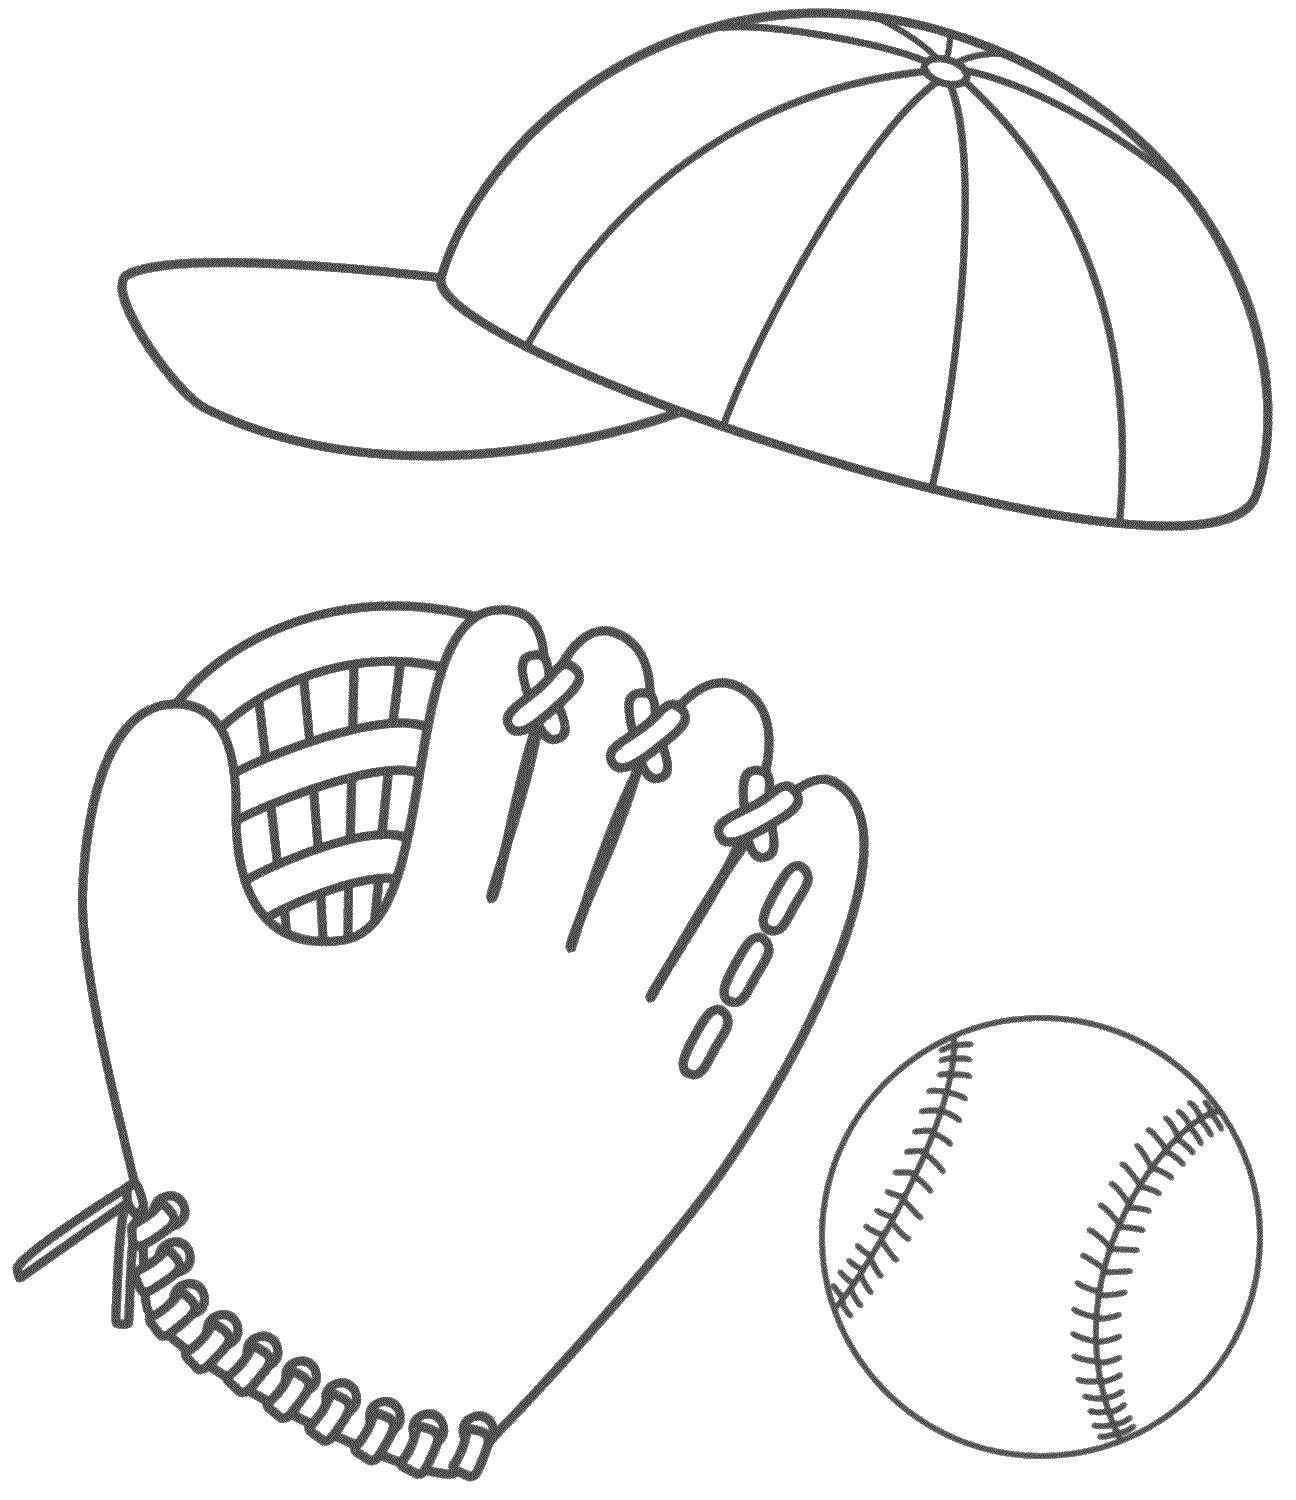 Coloring Baseball things. Category Sports. Tags:  Sports, baseball.